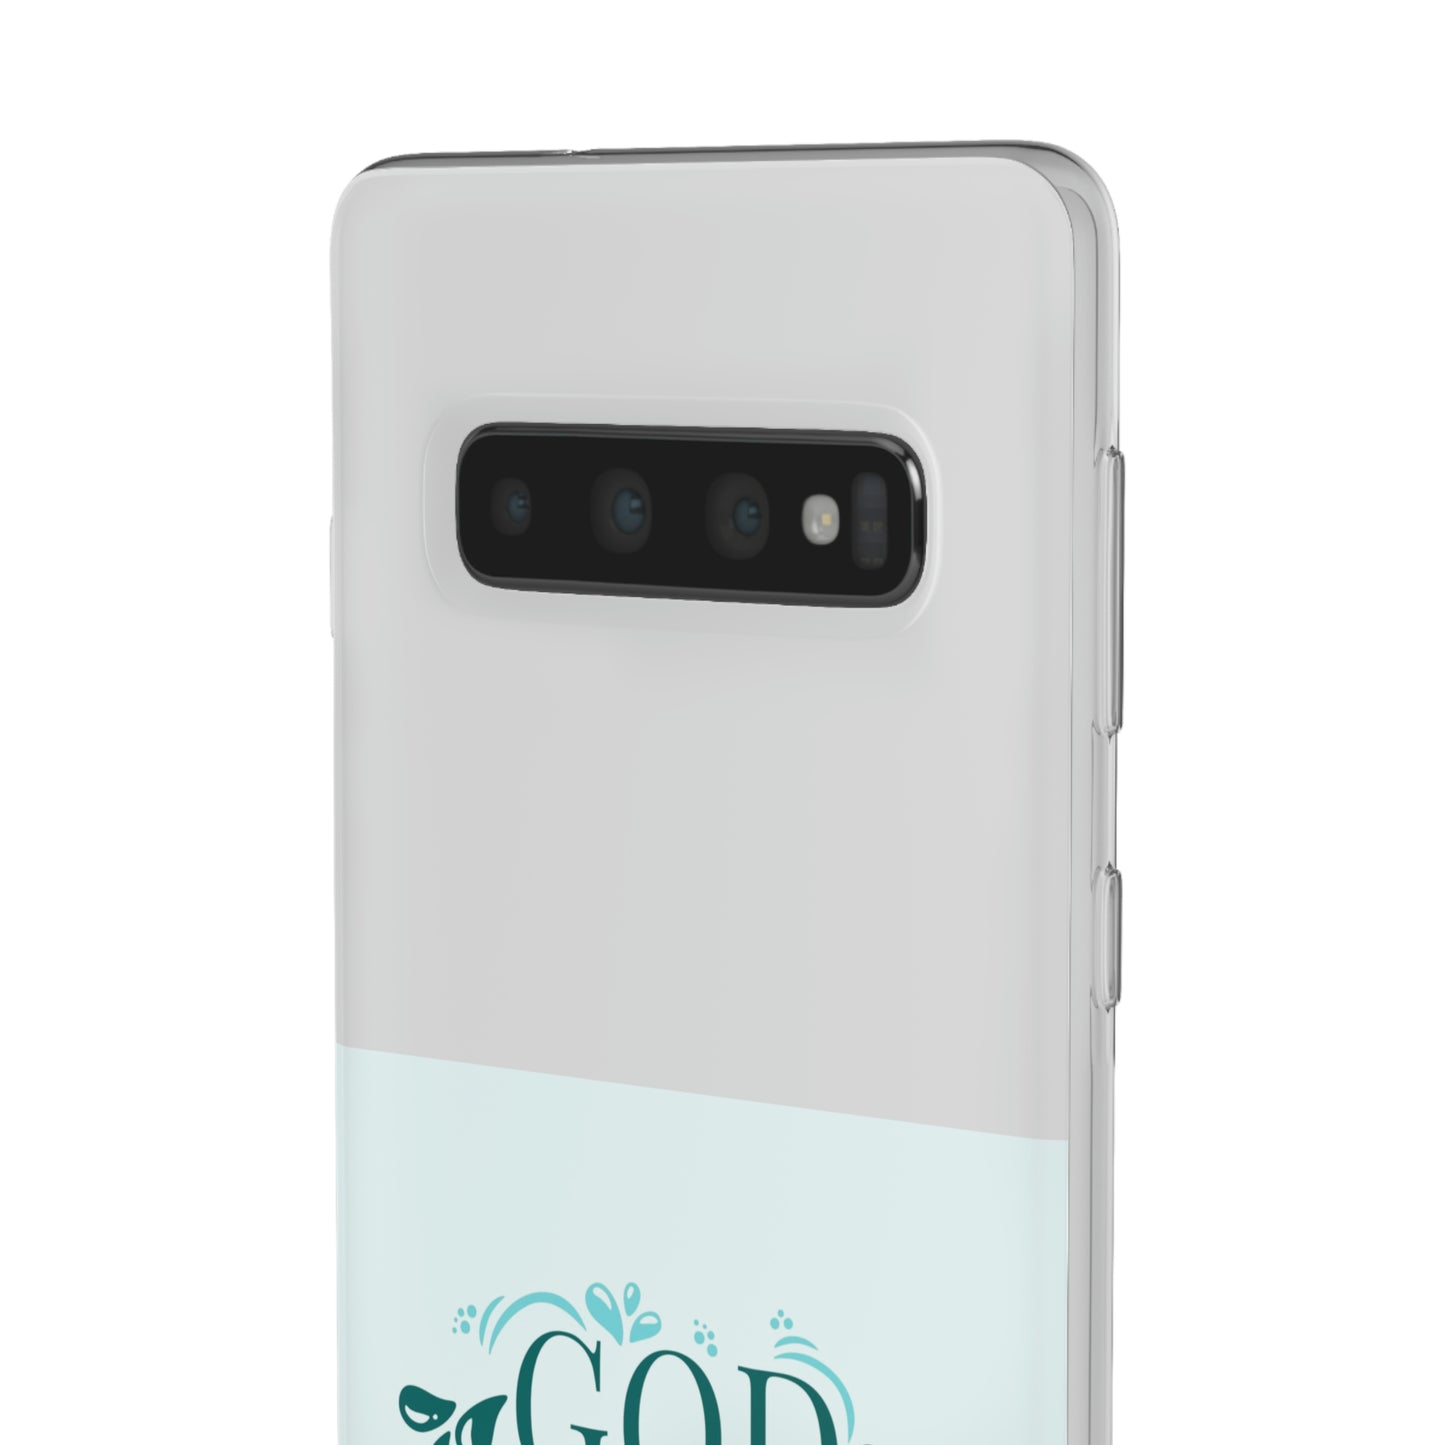 God Certified Trailblazer Flexi Phone Case